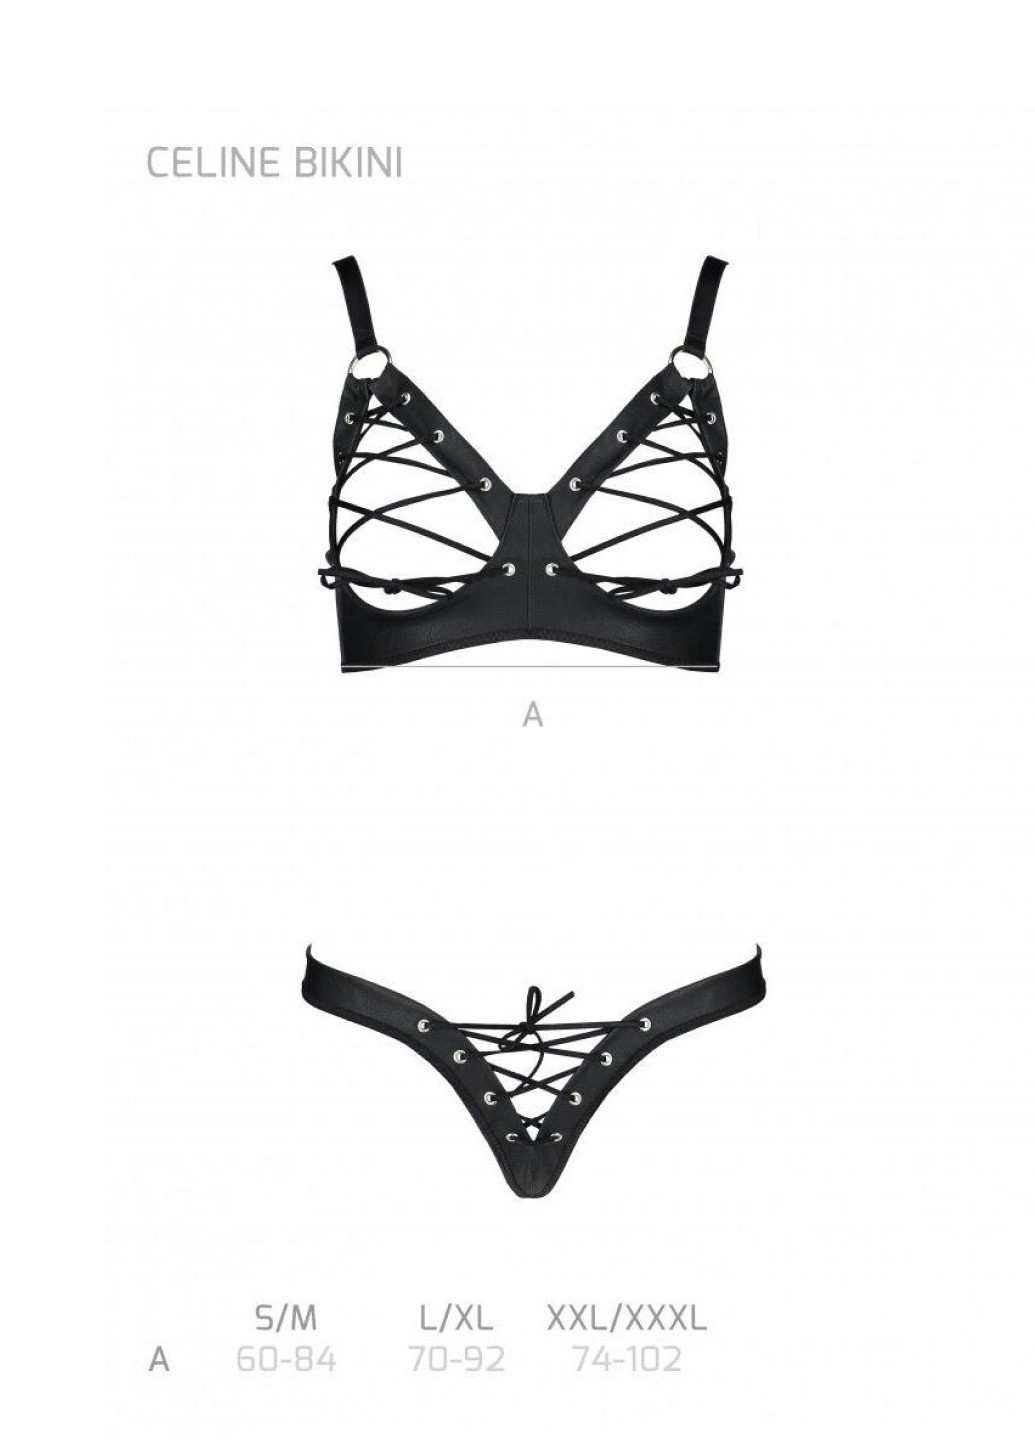 Прозрачный демисезонный комплект из экокожи celine bikini black l/xl — : открытый бра с лентами, стринги со шнуровкой Passion